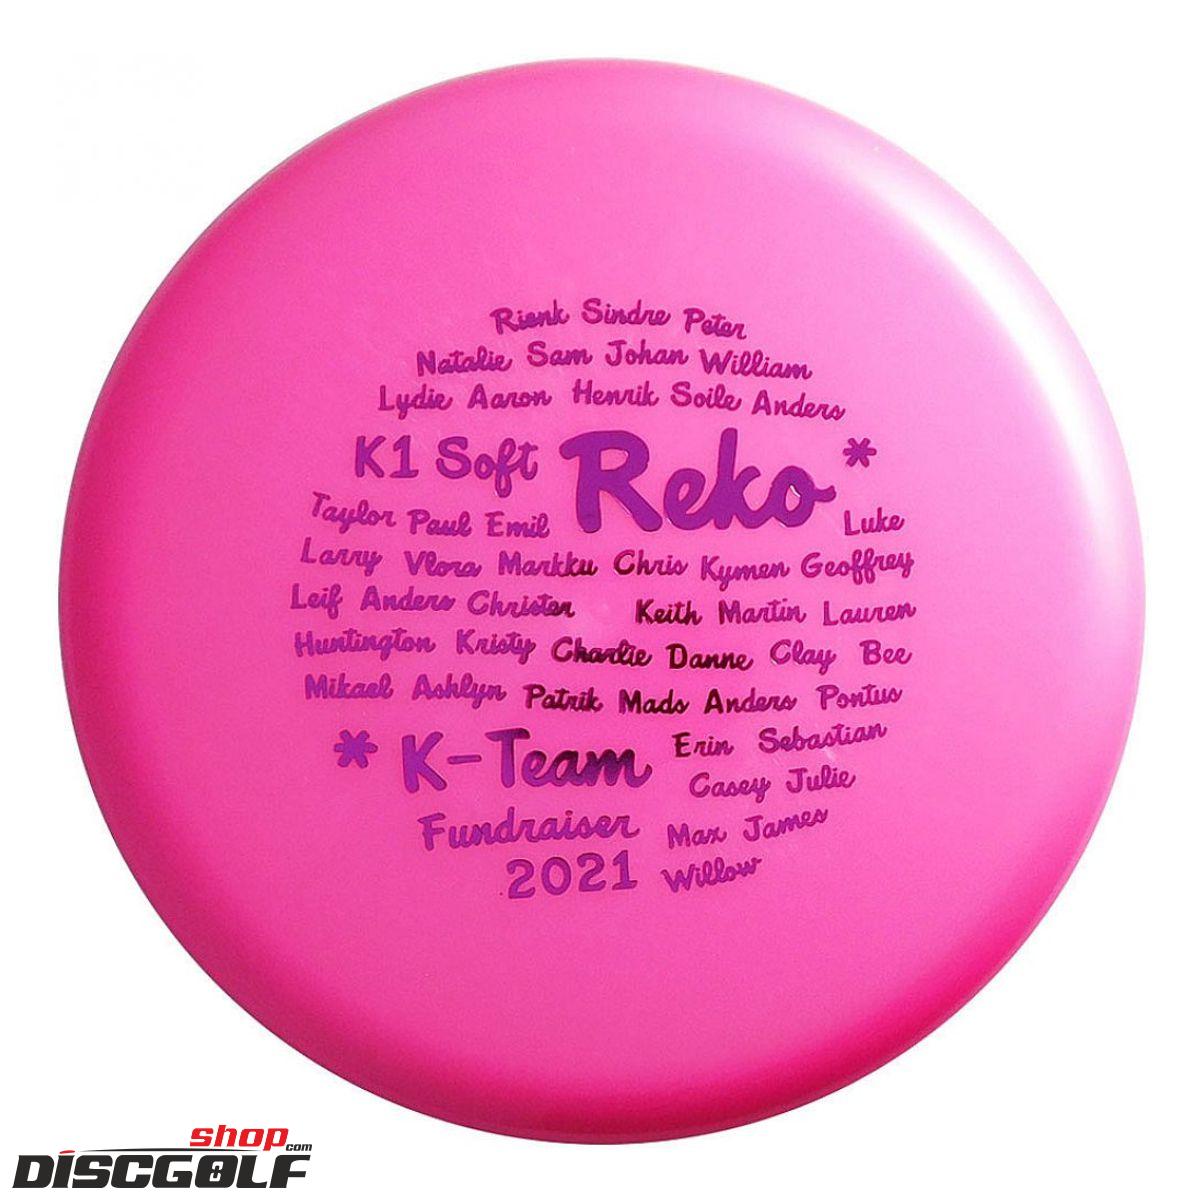 Kastaplast Reko K1 Soft Team Fundraiser 2021